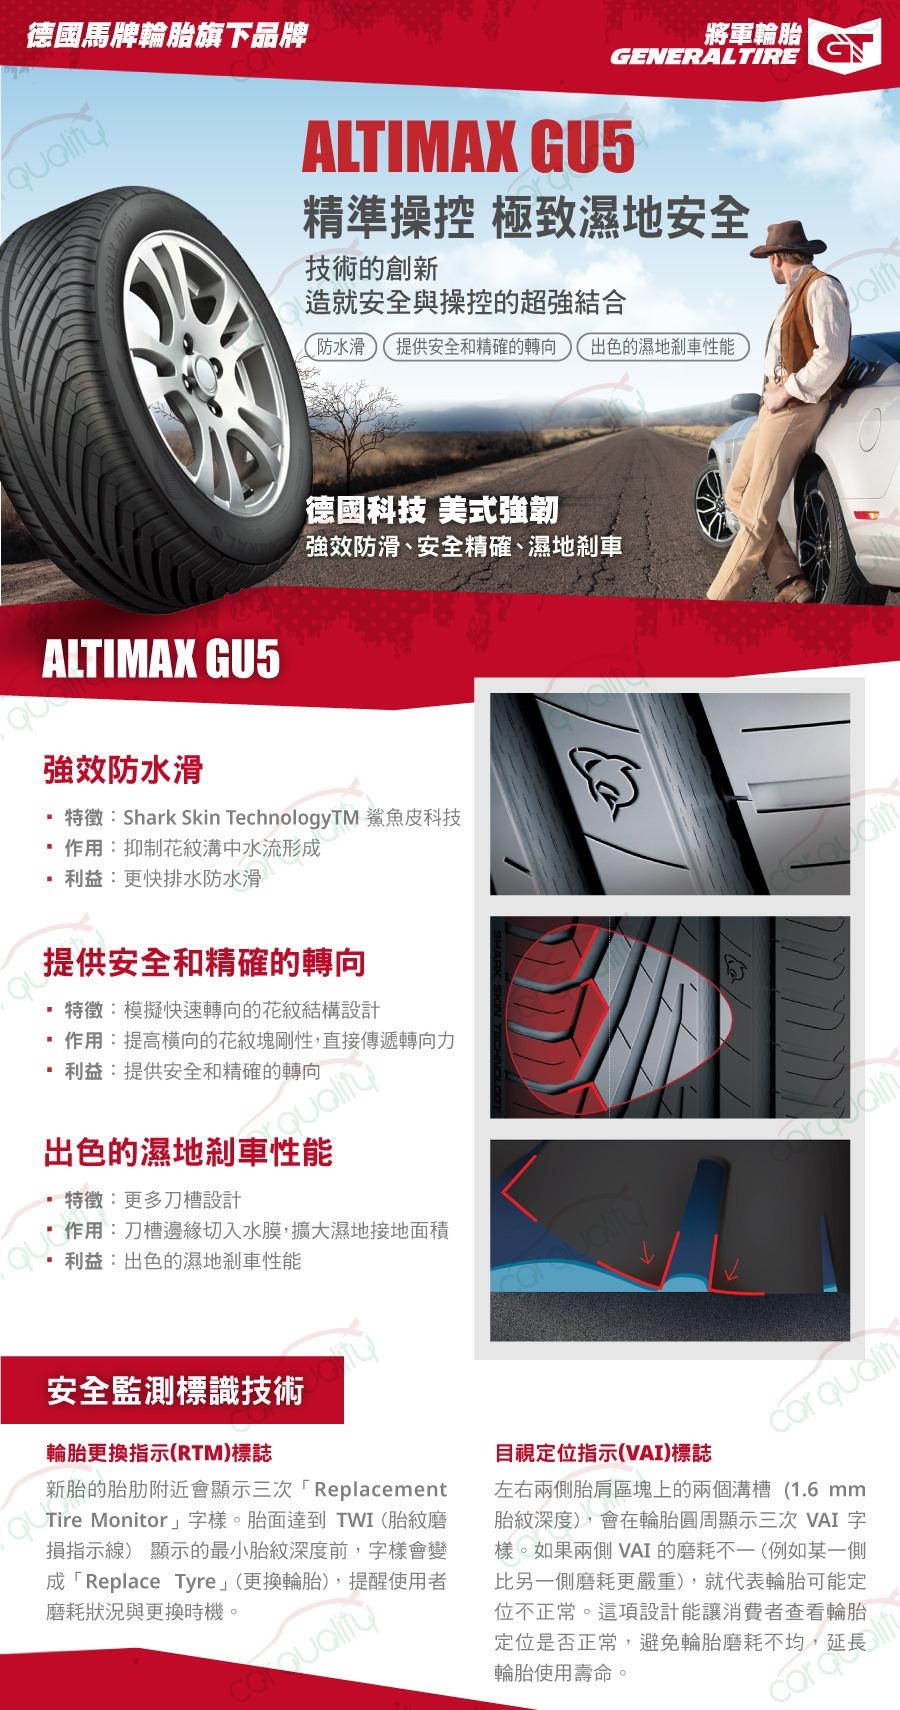 【將軍】ALTIMAX GU5_225/40/18吋濕地操控輪胎_送專業安裝(GU5)